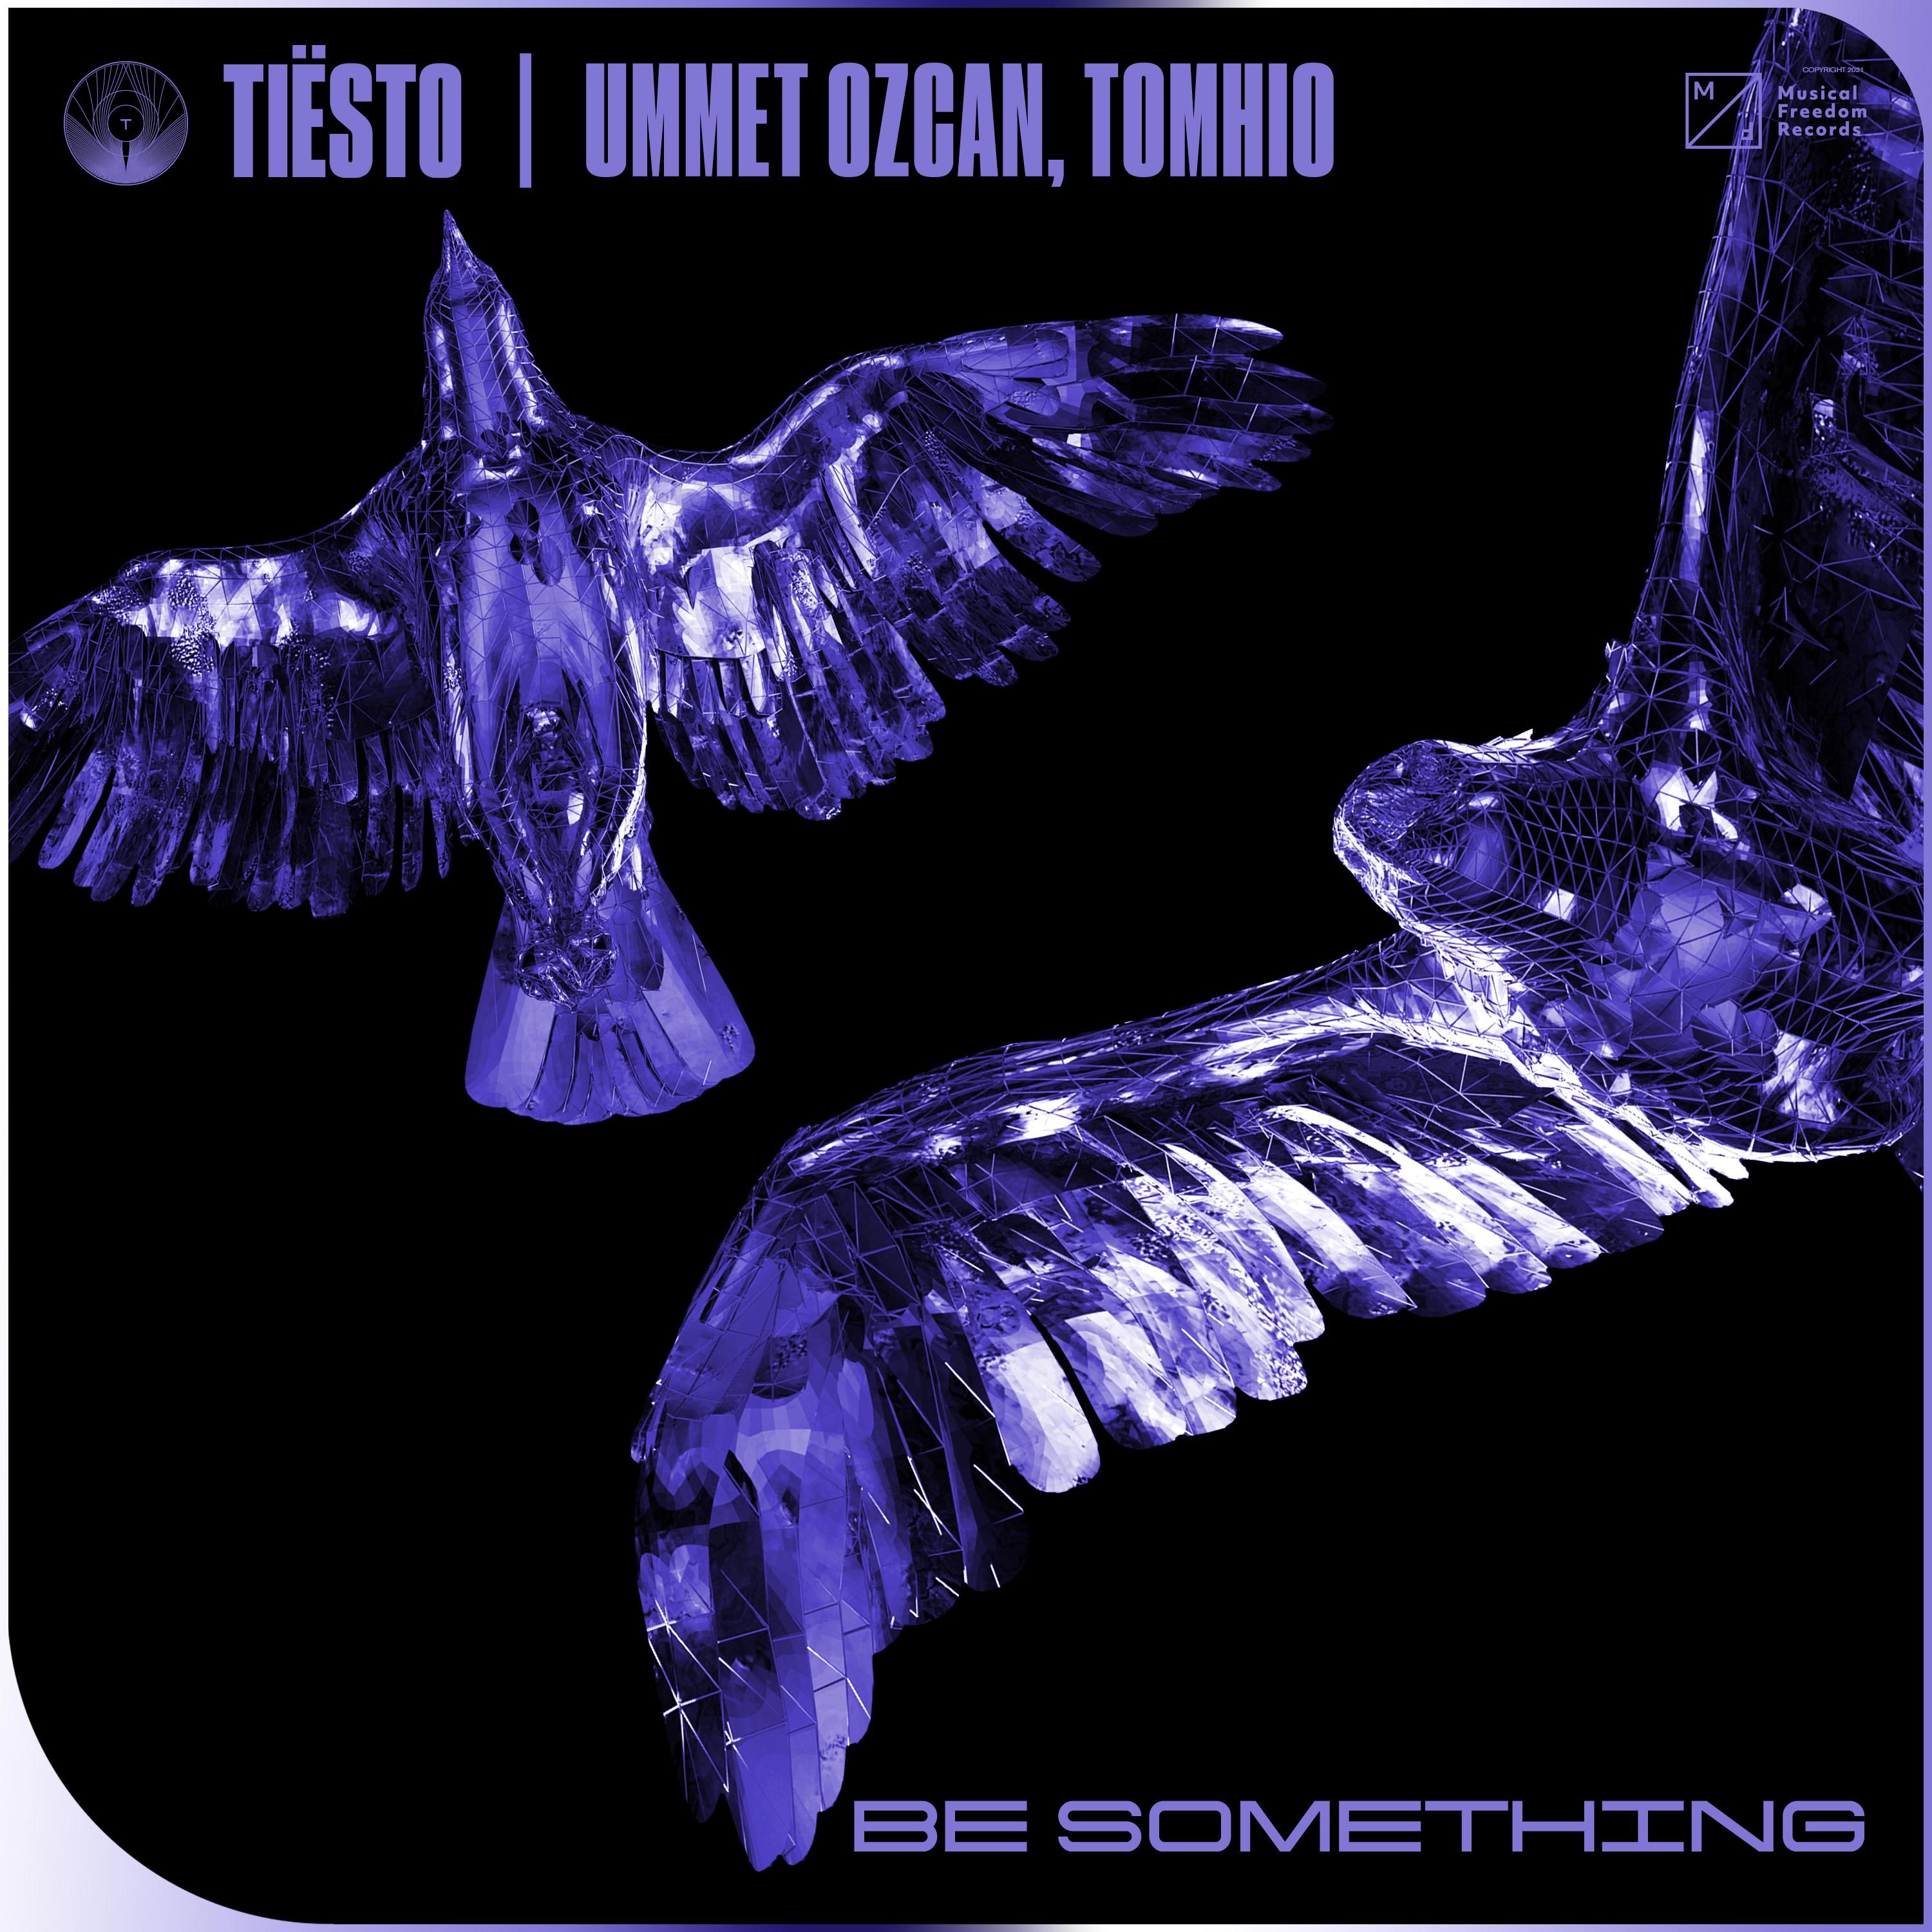 Tiësto - Be Something